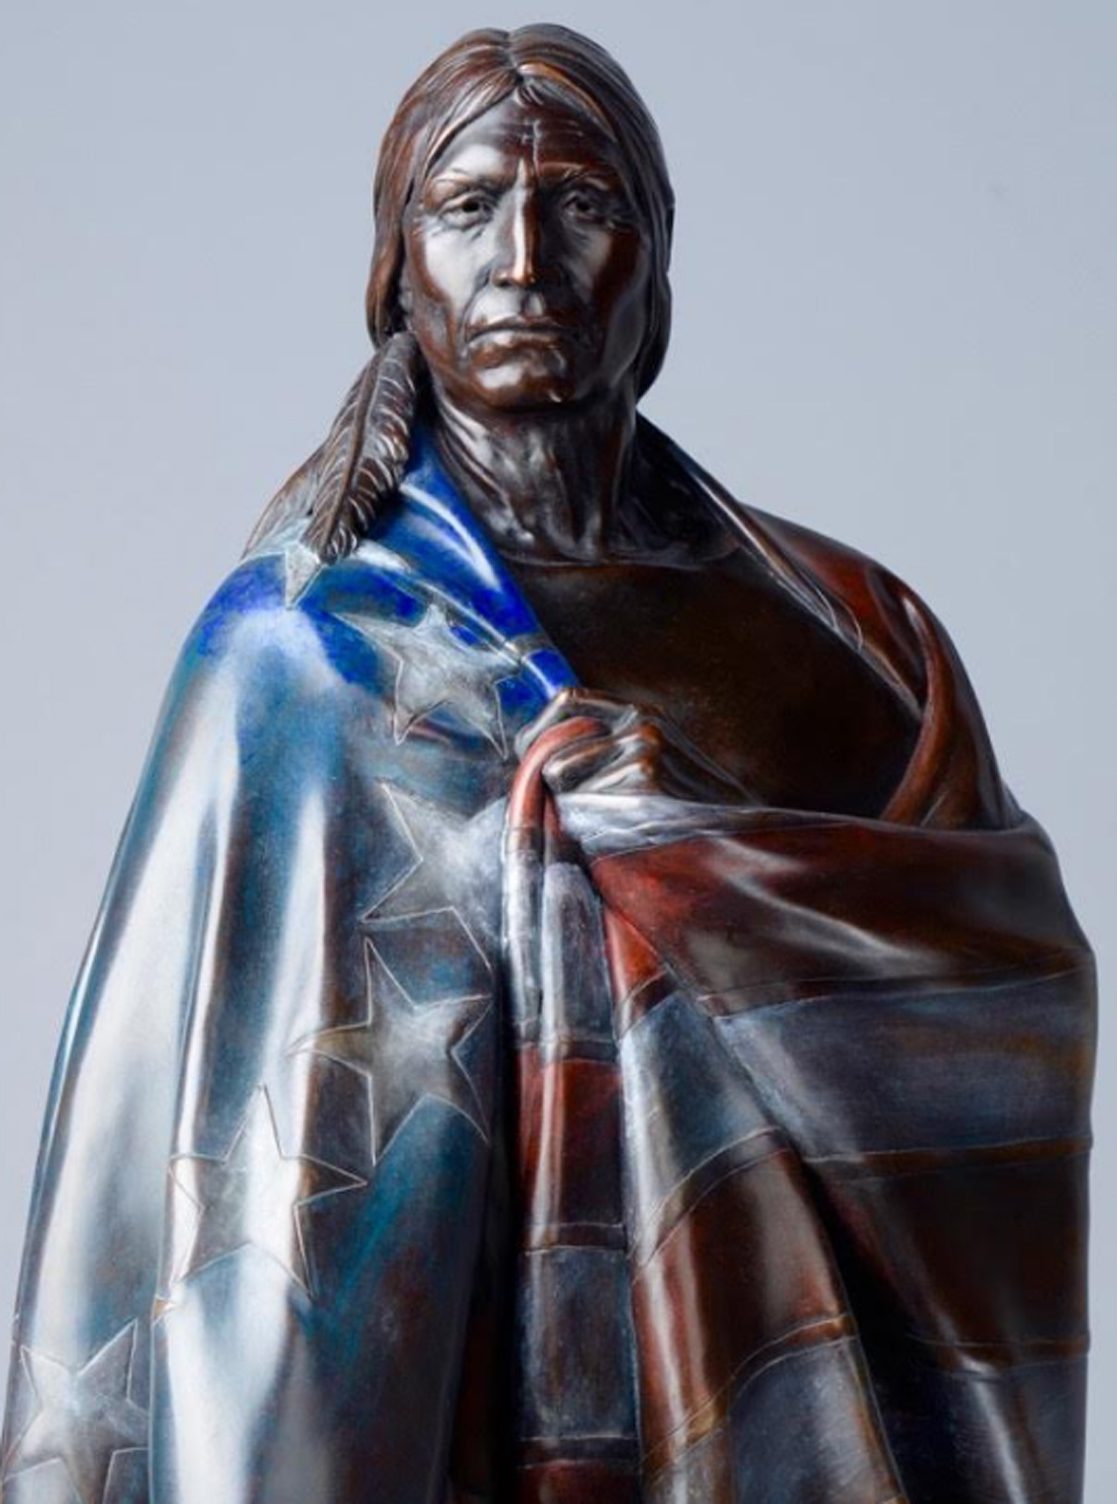 Chumash host veteran memorial statue through May 30